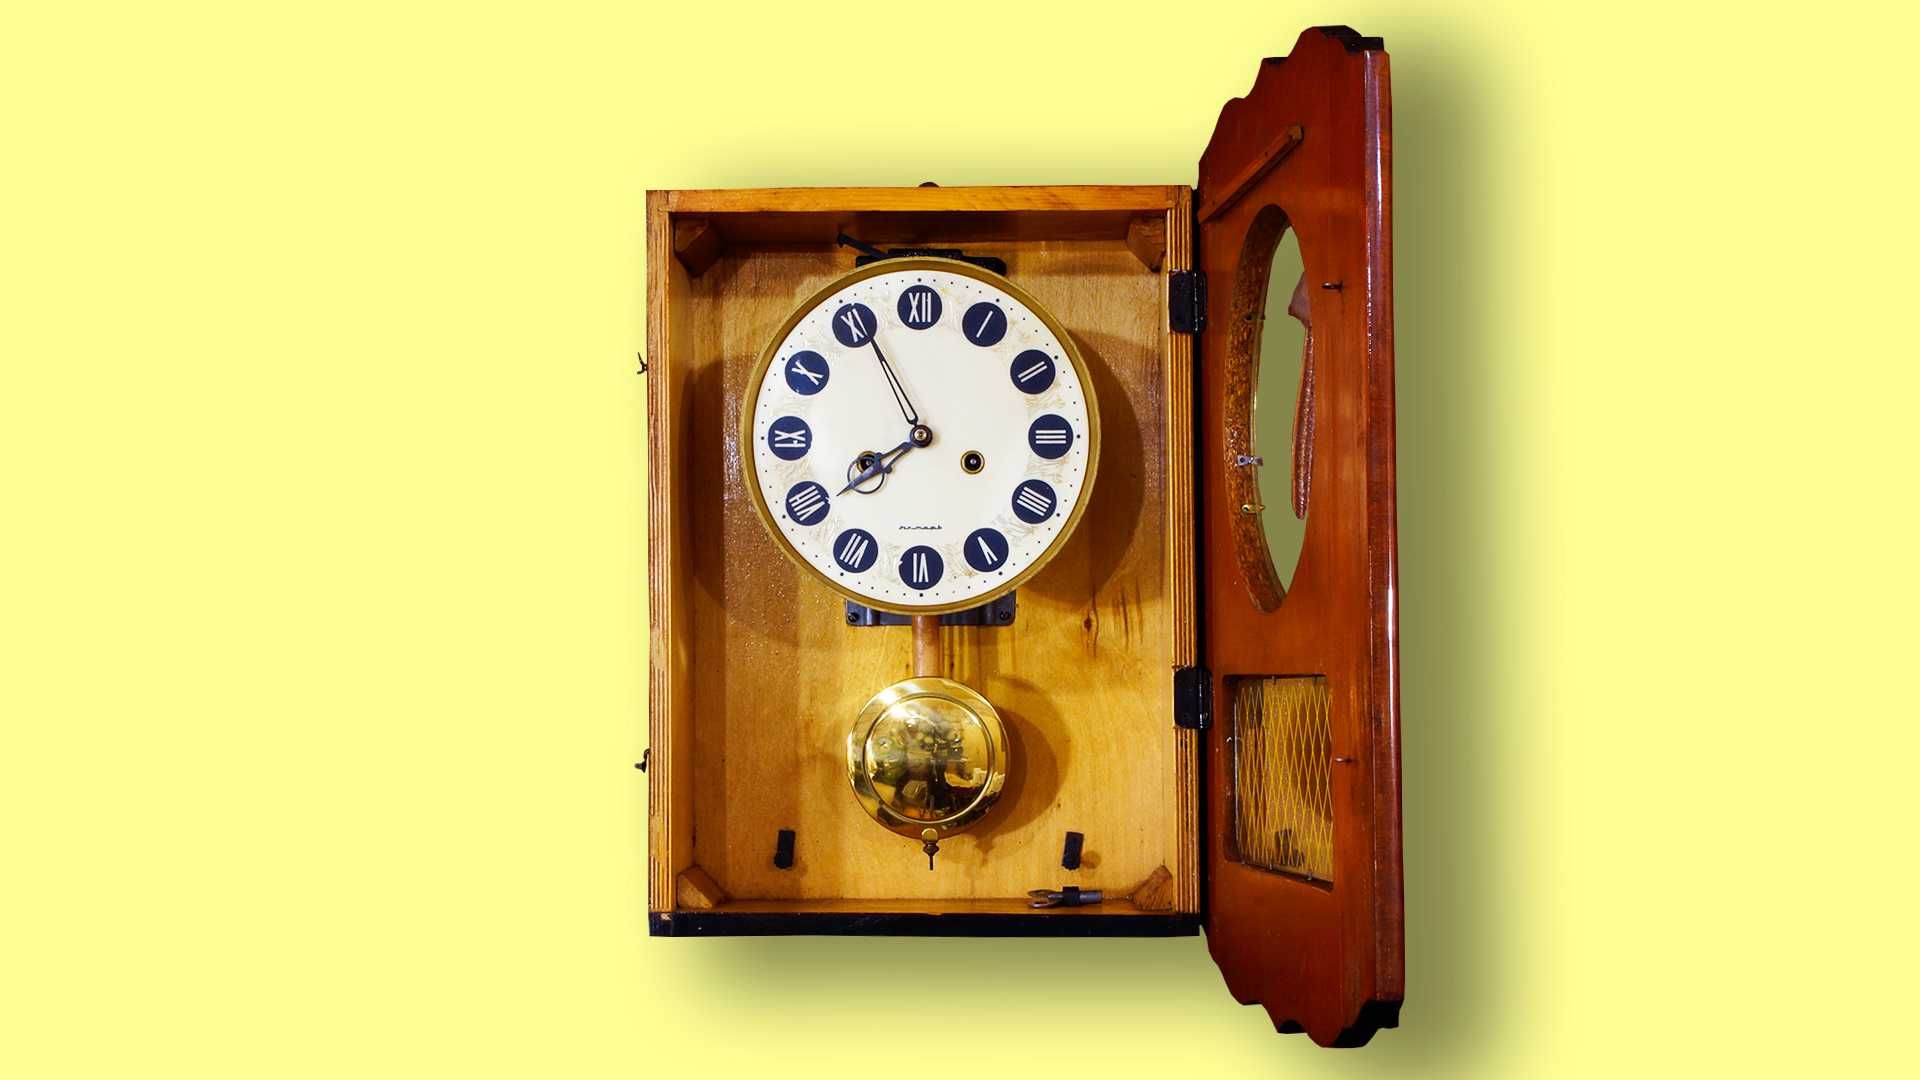 ОЧЗ-Янтарь.Настенные часы с боем.70-е годы.Состояние Идеал.Есть видео.